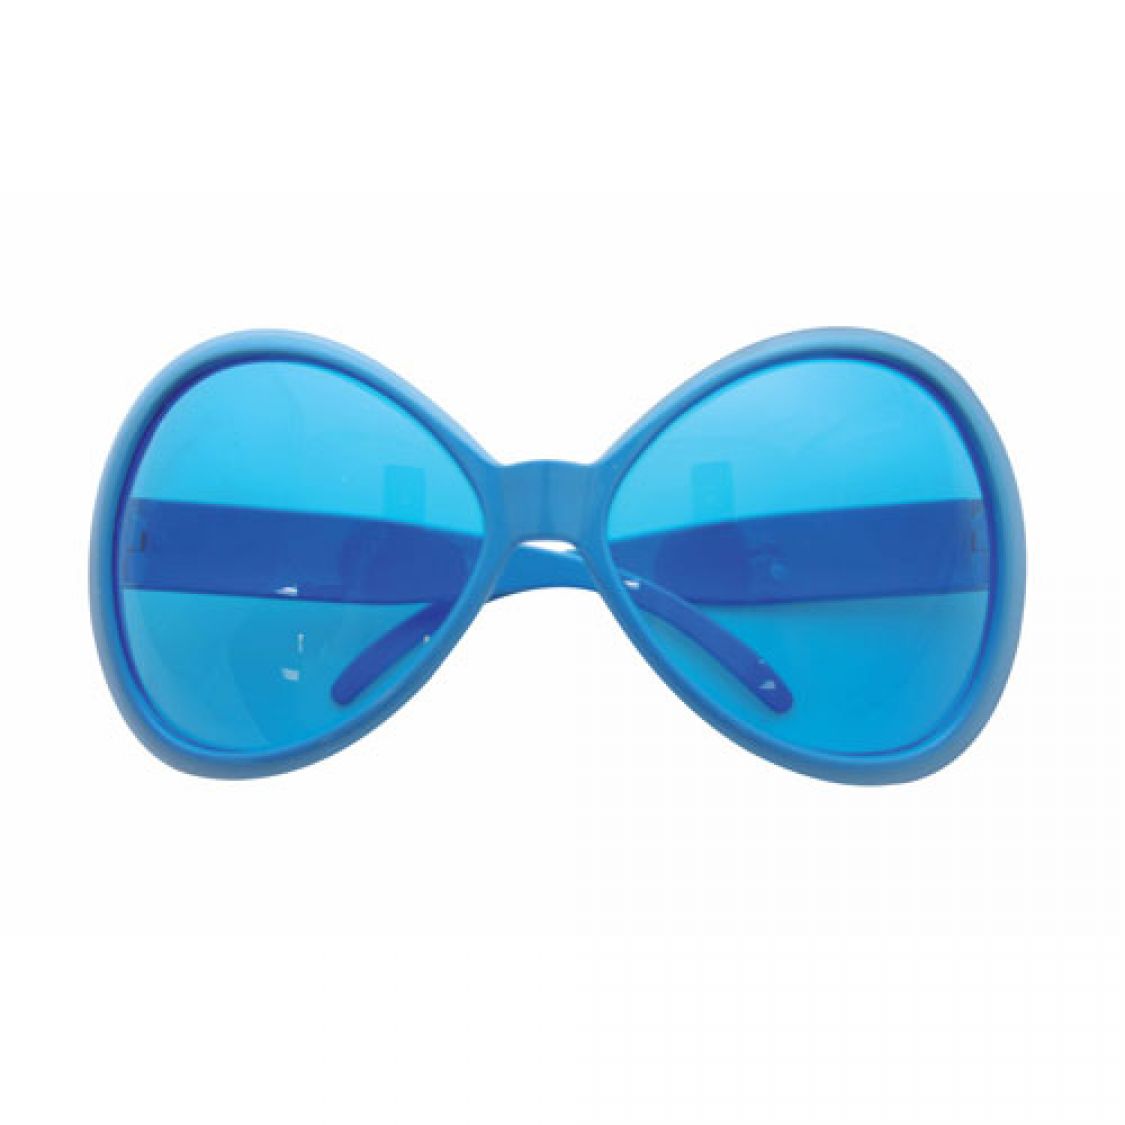 Lunettes Plastique-Mouche GM bleu